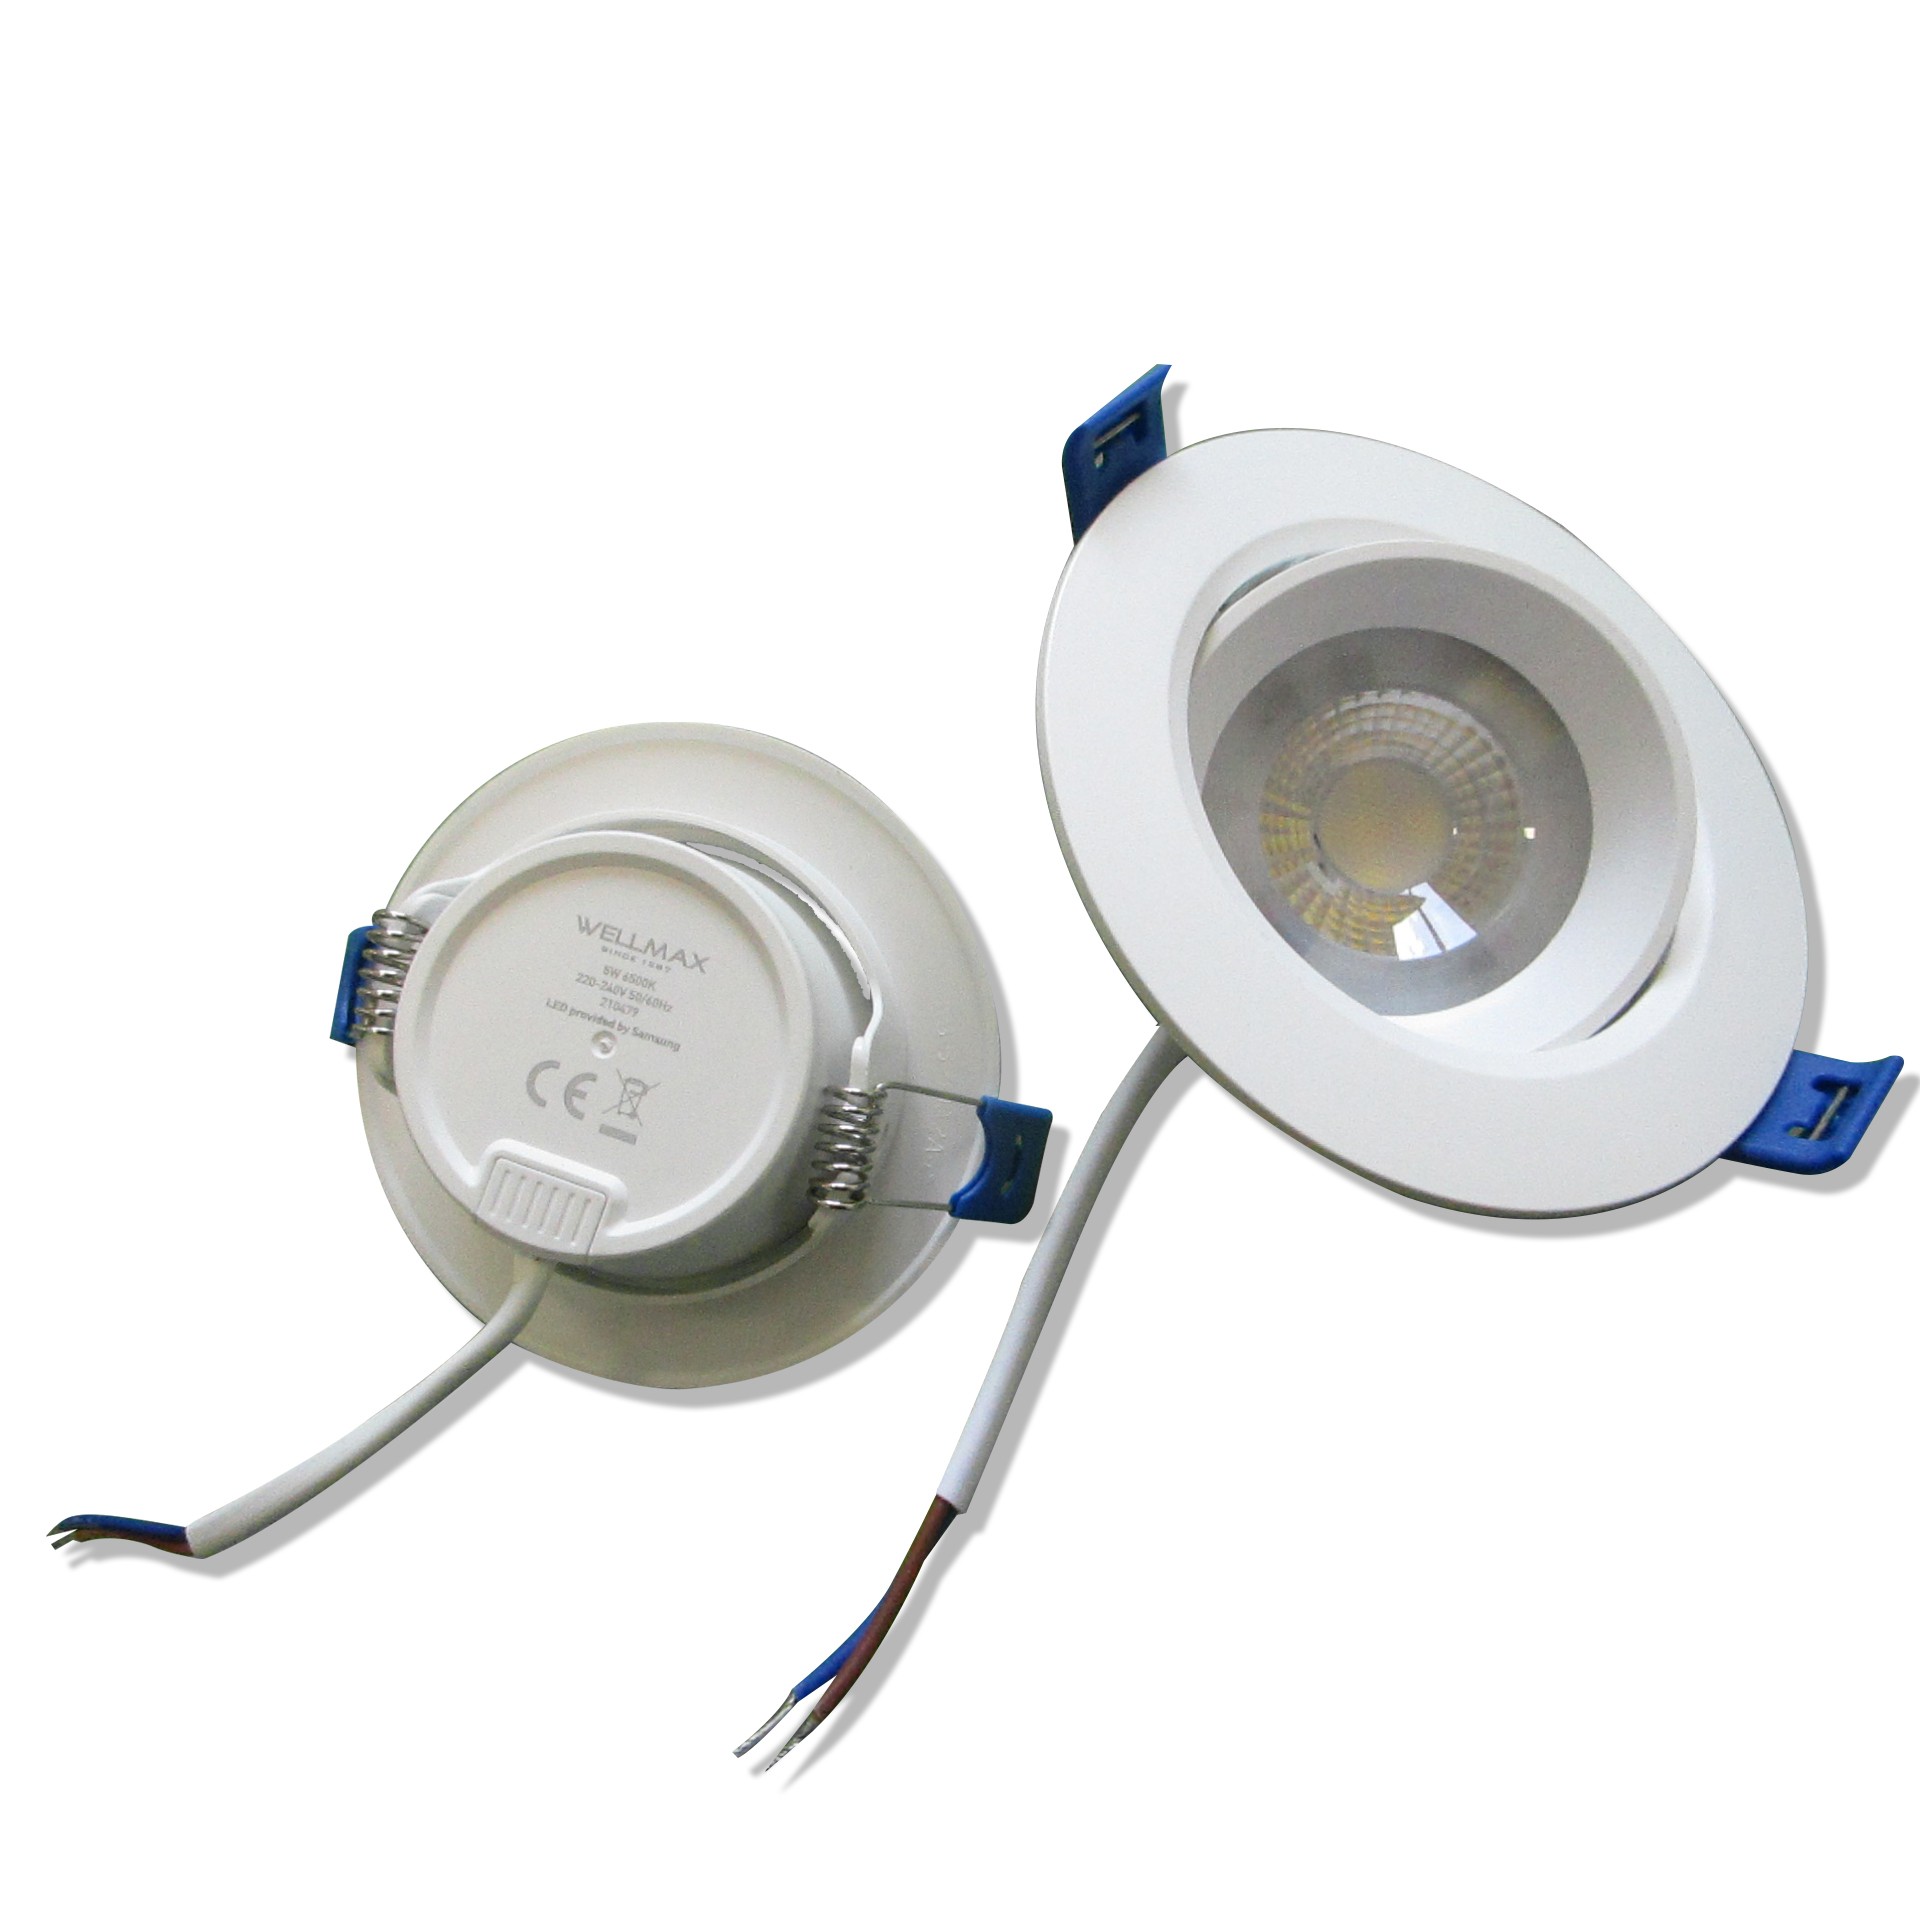 Module LED de 12w 220v sans transformateur